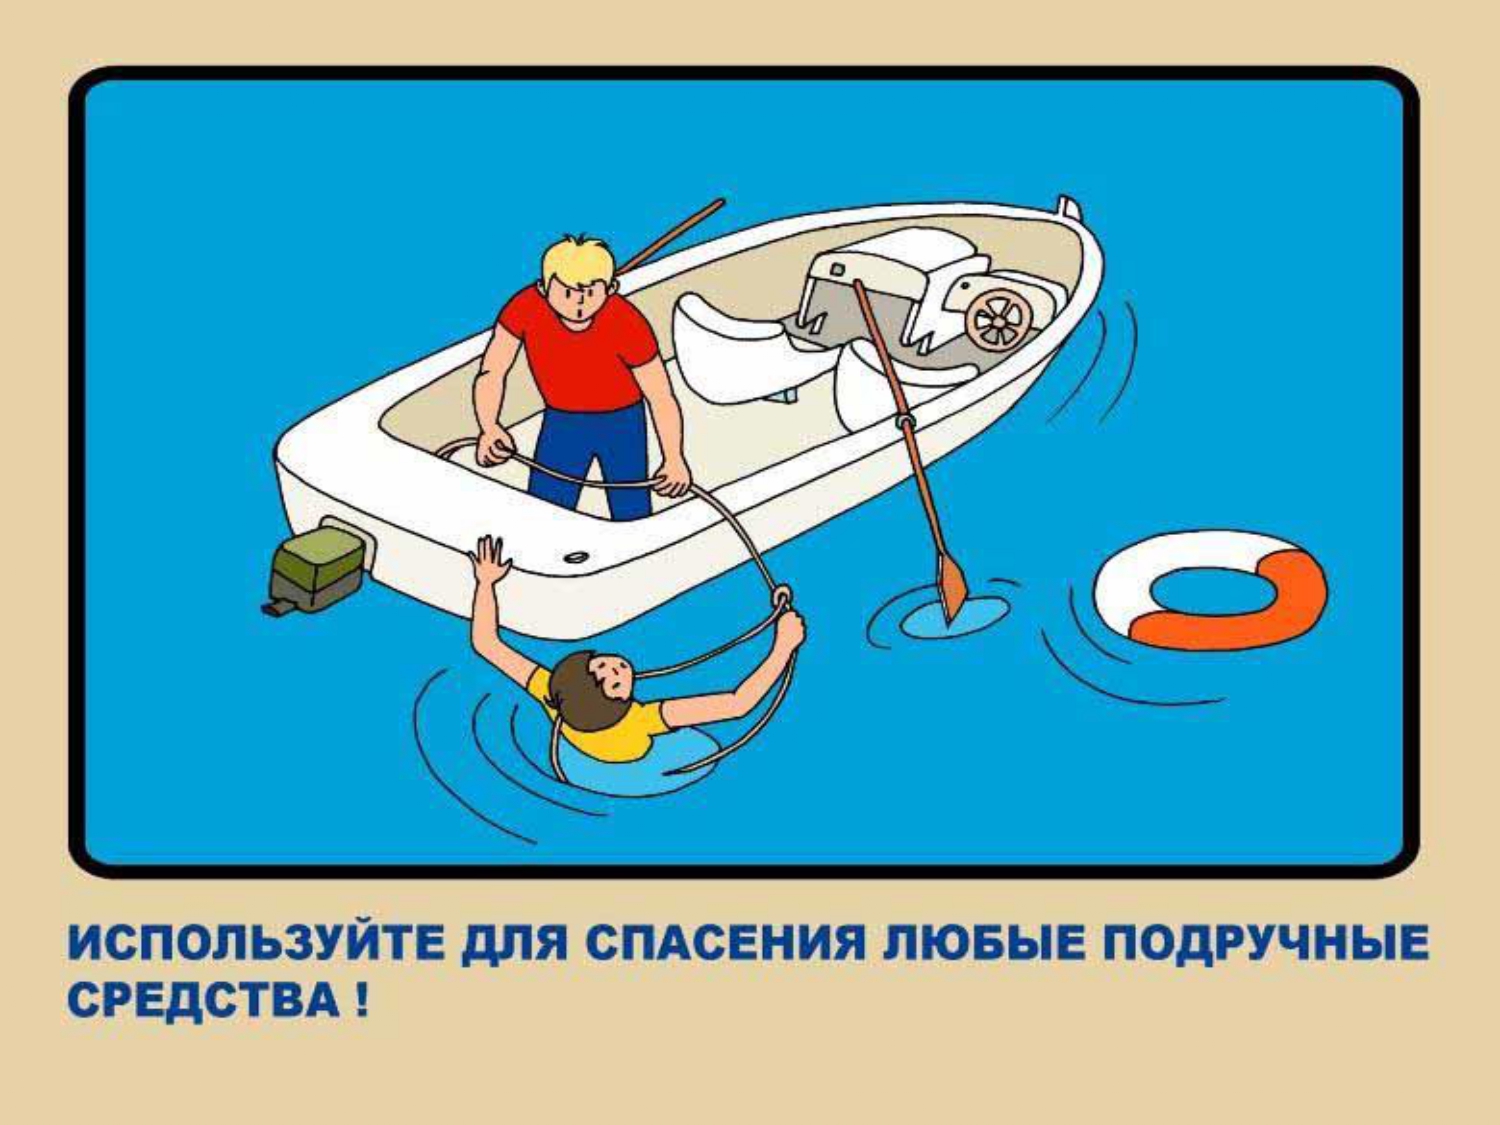 Спасать что делать спасаешь будешь спасать. Средства безопасности на воде. Спасение на воде. Плакат спасение на воде. Спасение утопающего на воде с лодки.